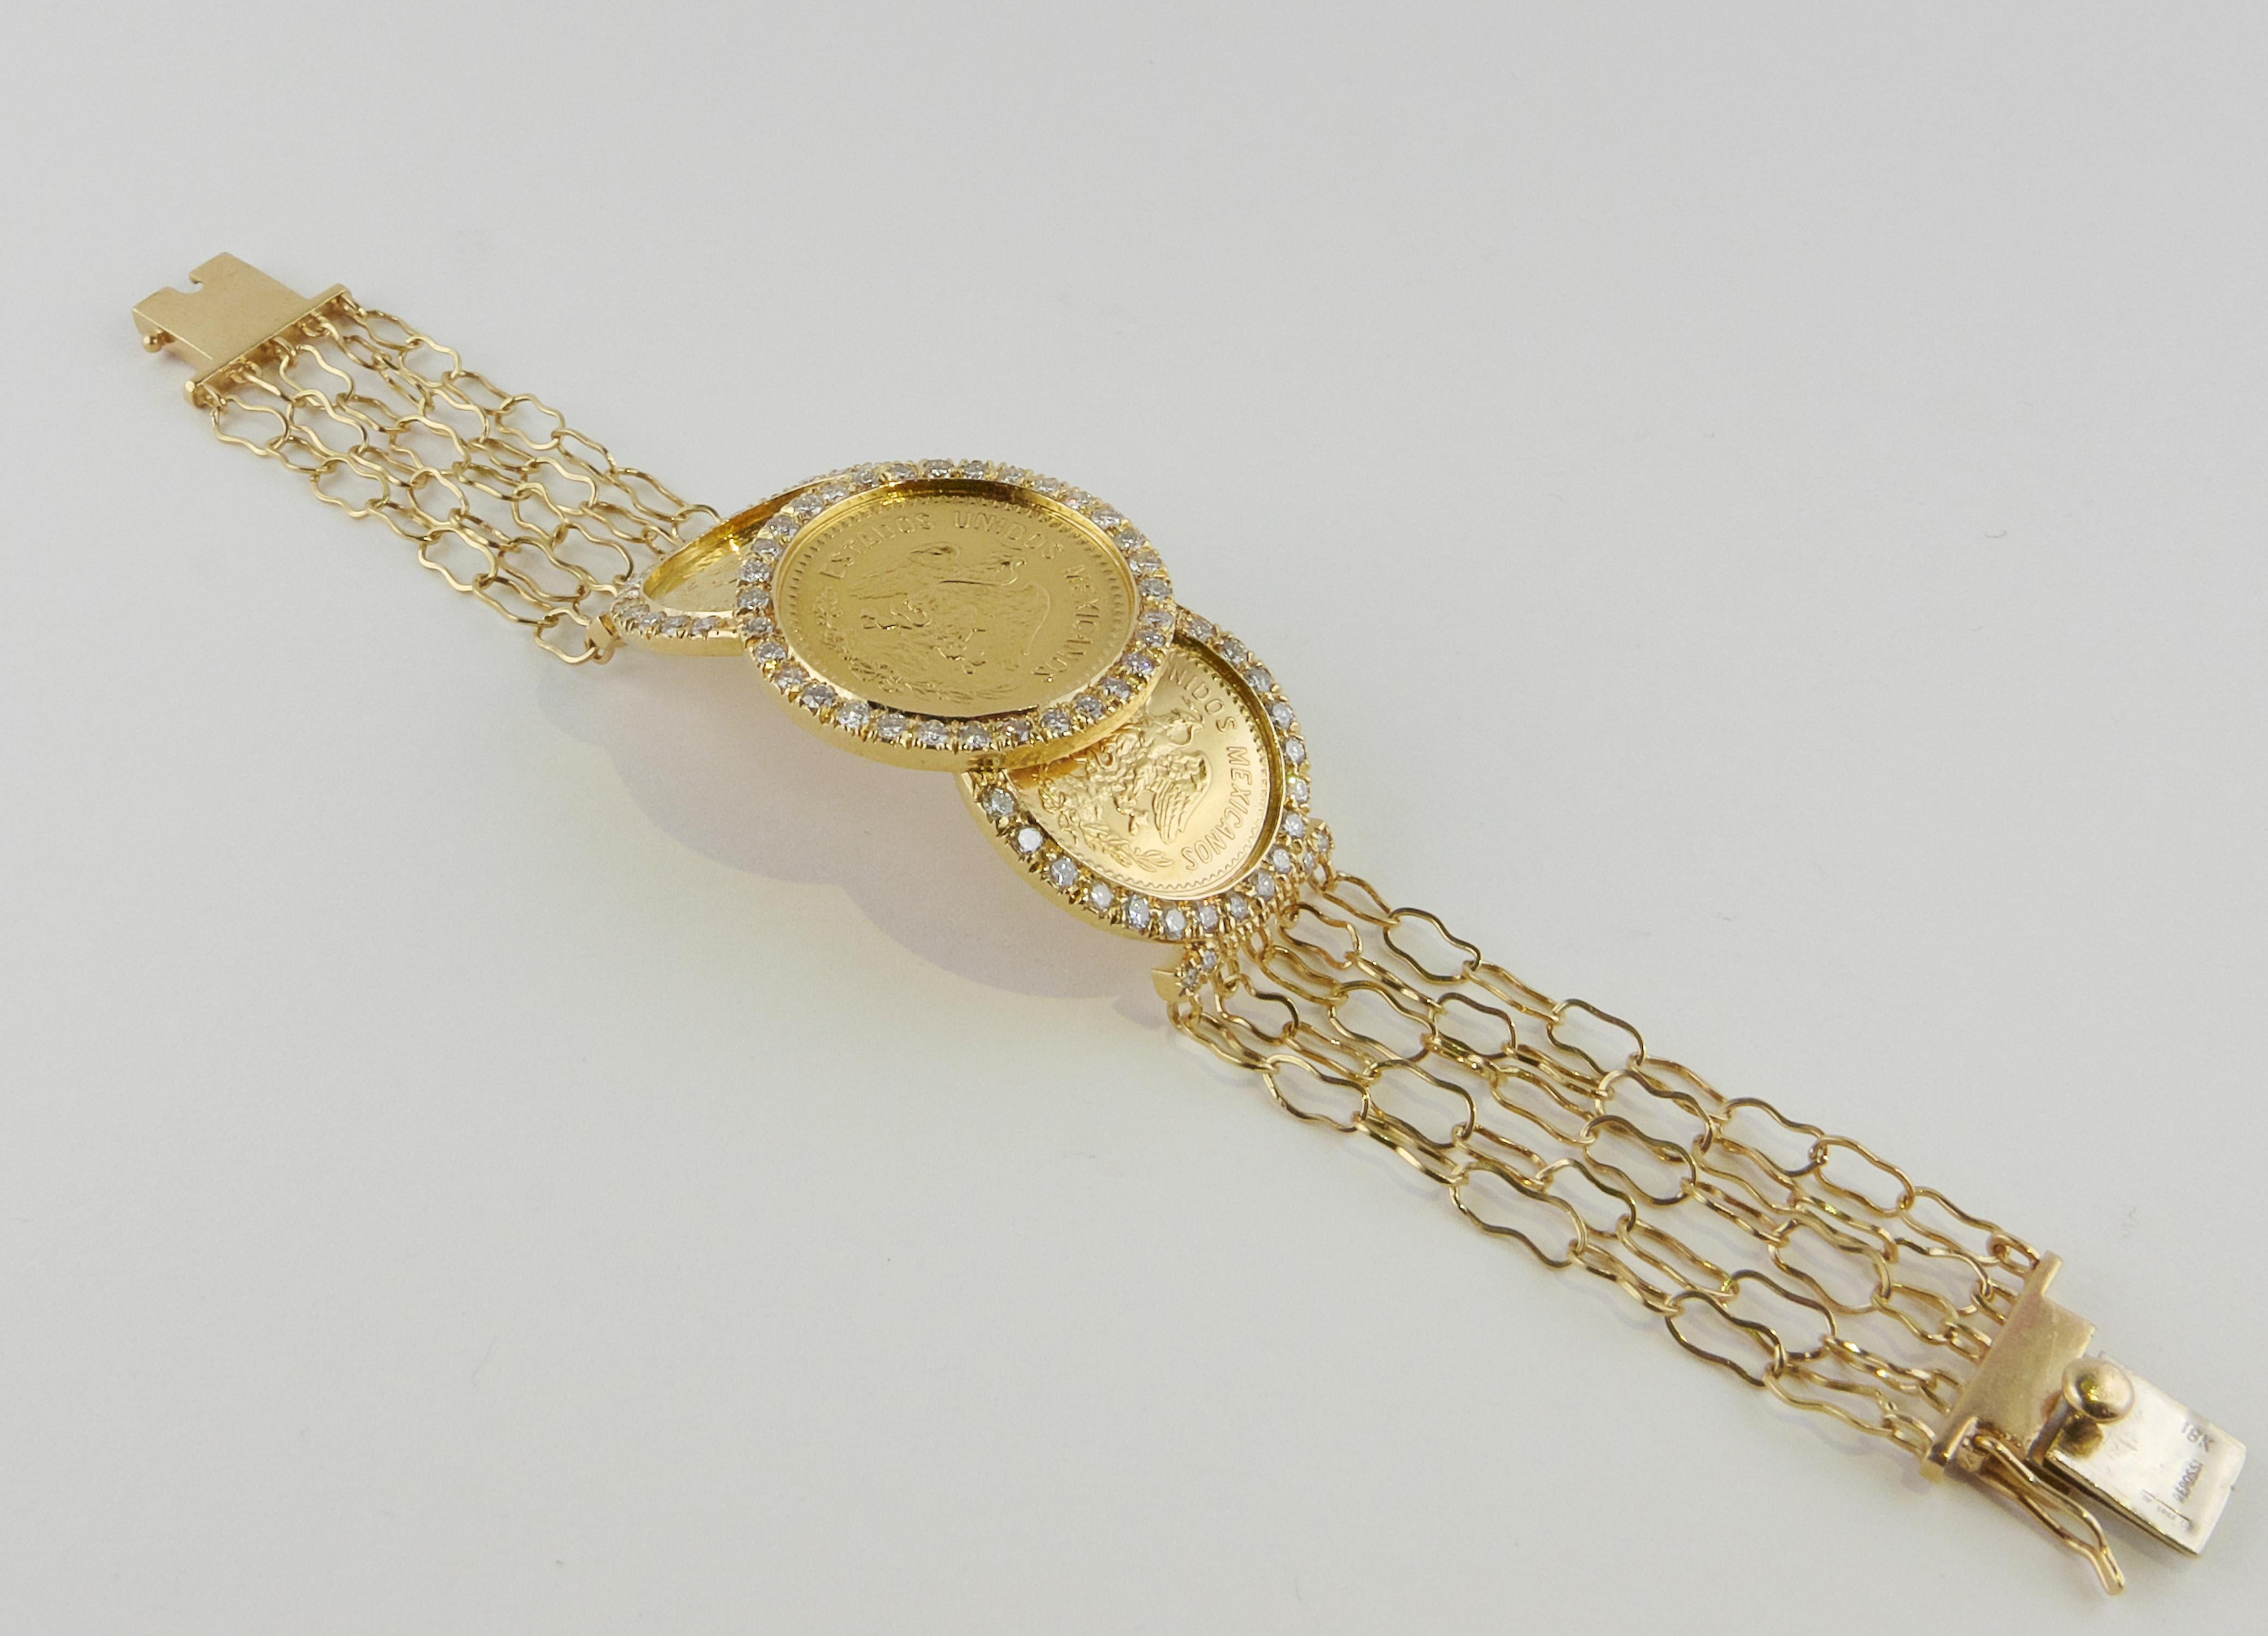 Ein äußerst schickes Armband, bestehend aus drei Münzen aus 24-karätigem Gelbgold, die in eine ungewöhnliche, gegliederte Fassung aus fünf Strängen einer 18-karätigen Goldkette eingefasst sind. Die drei reichen und warmen Ton Gold mexikanischen